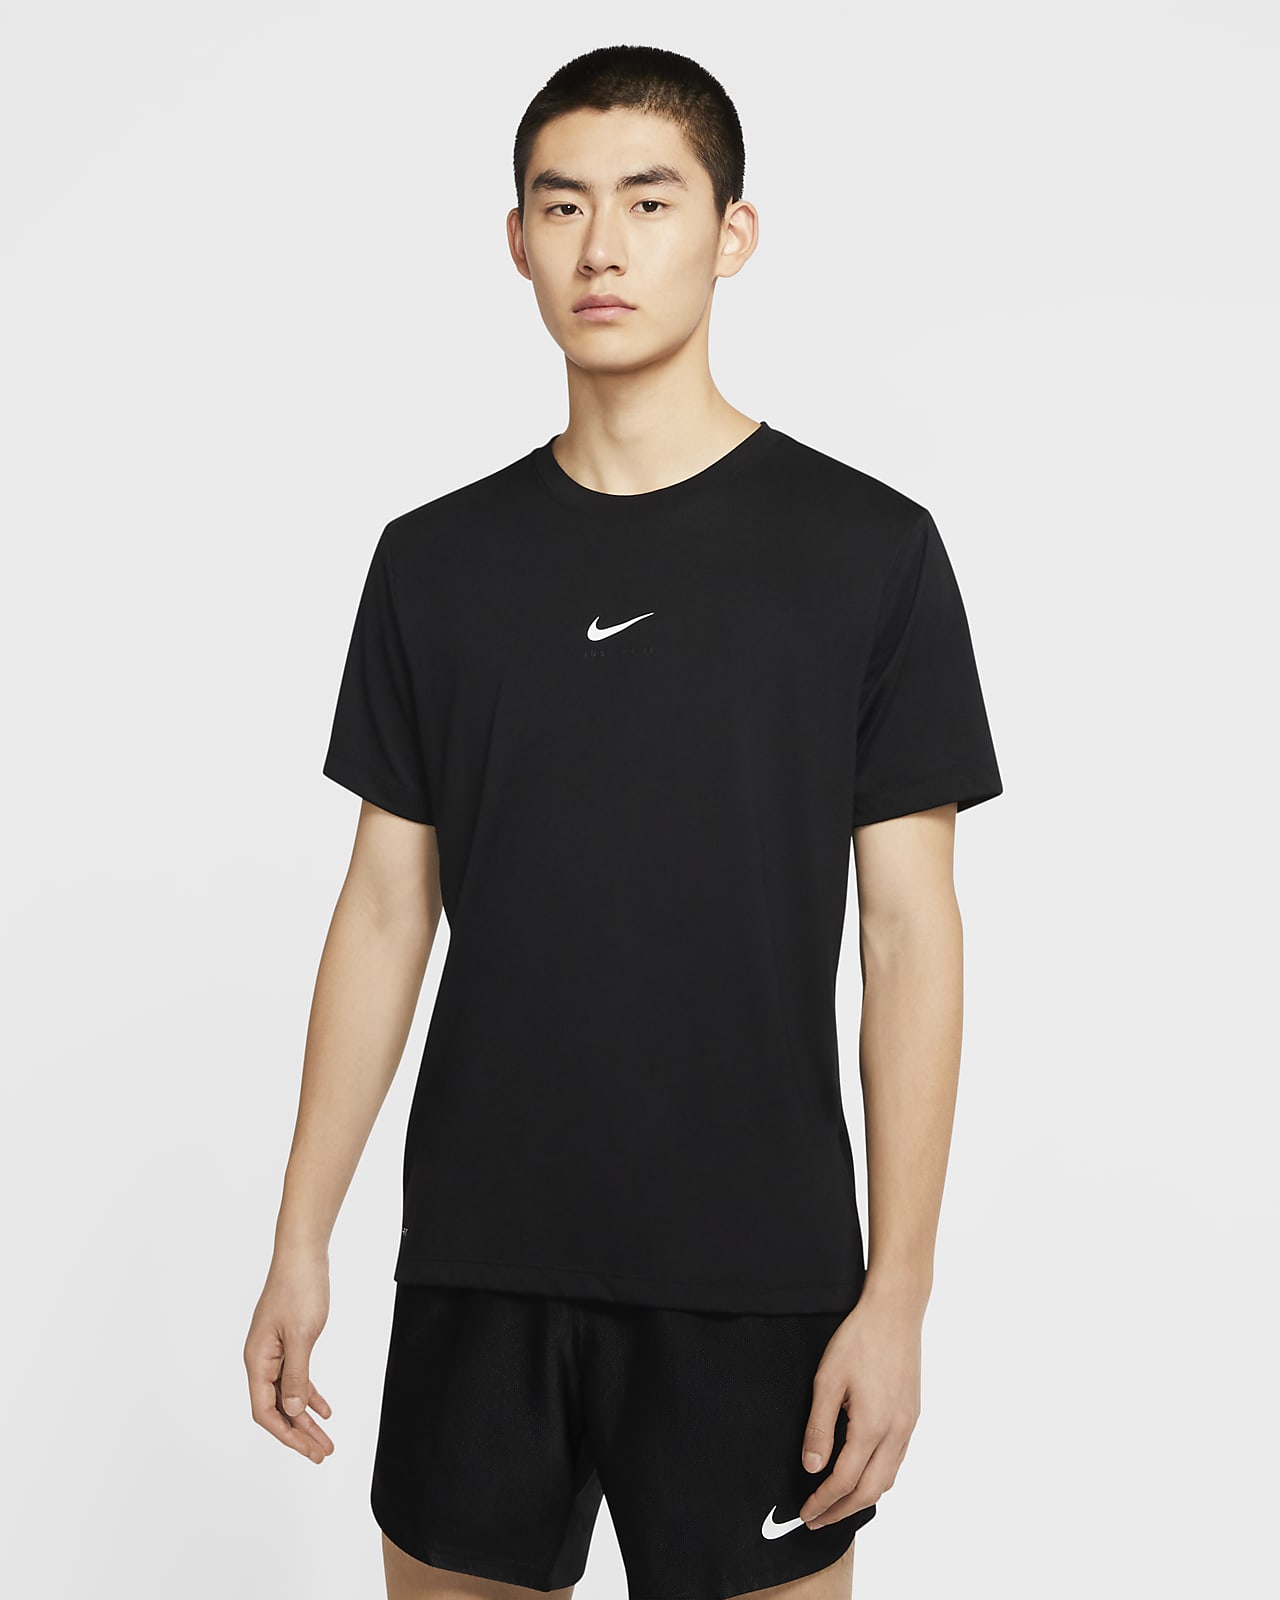 Nike Dri-FIT Swoosh 男子训练T恤